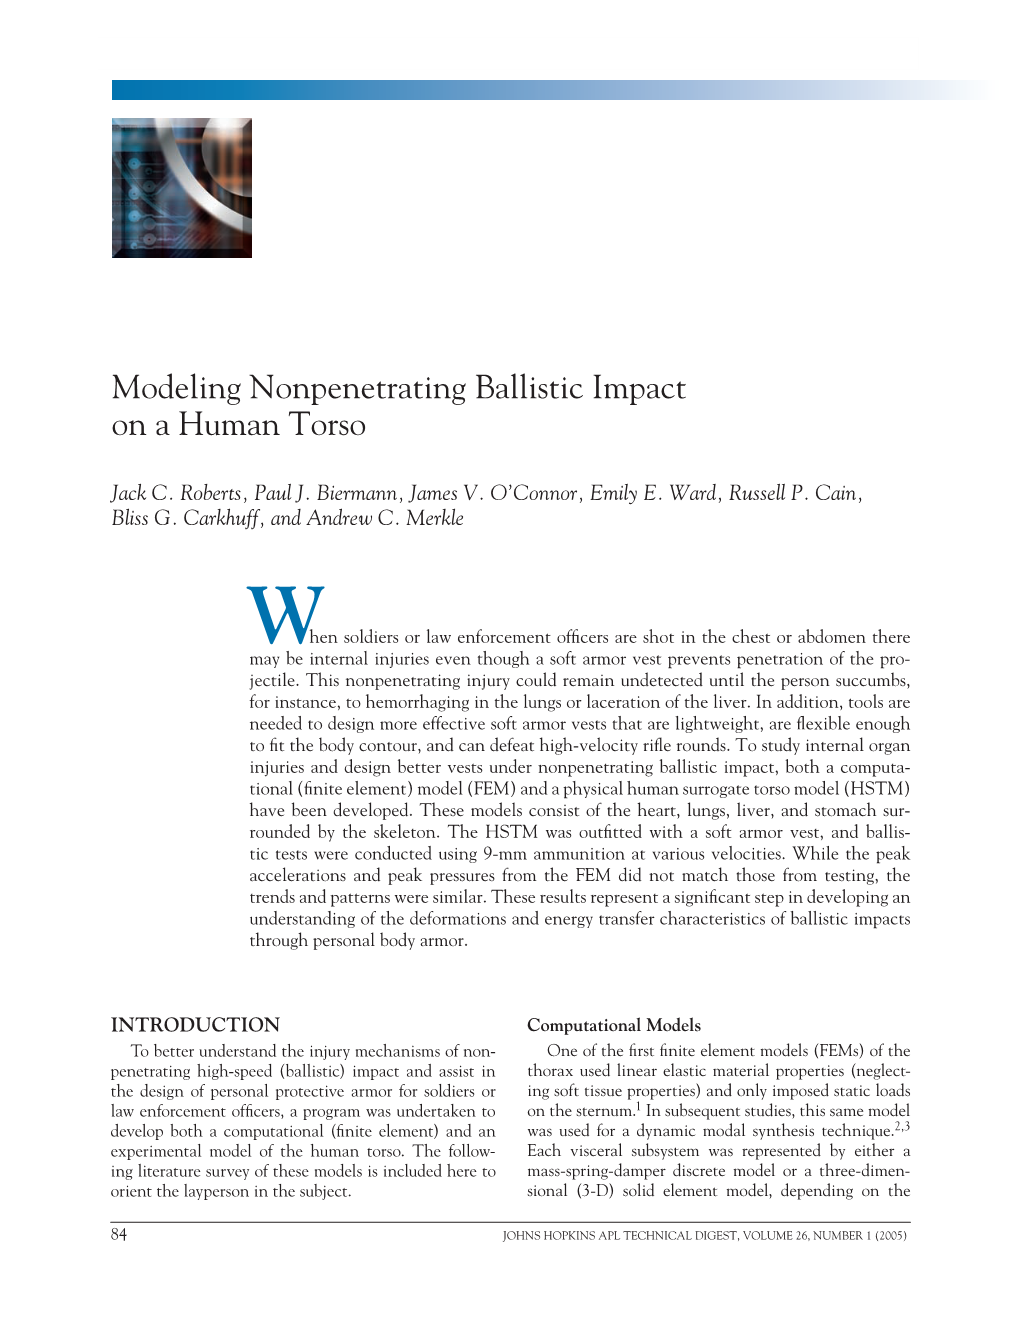 Modeling Nonpenetrating Ballistic Impact on a Human Torso